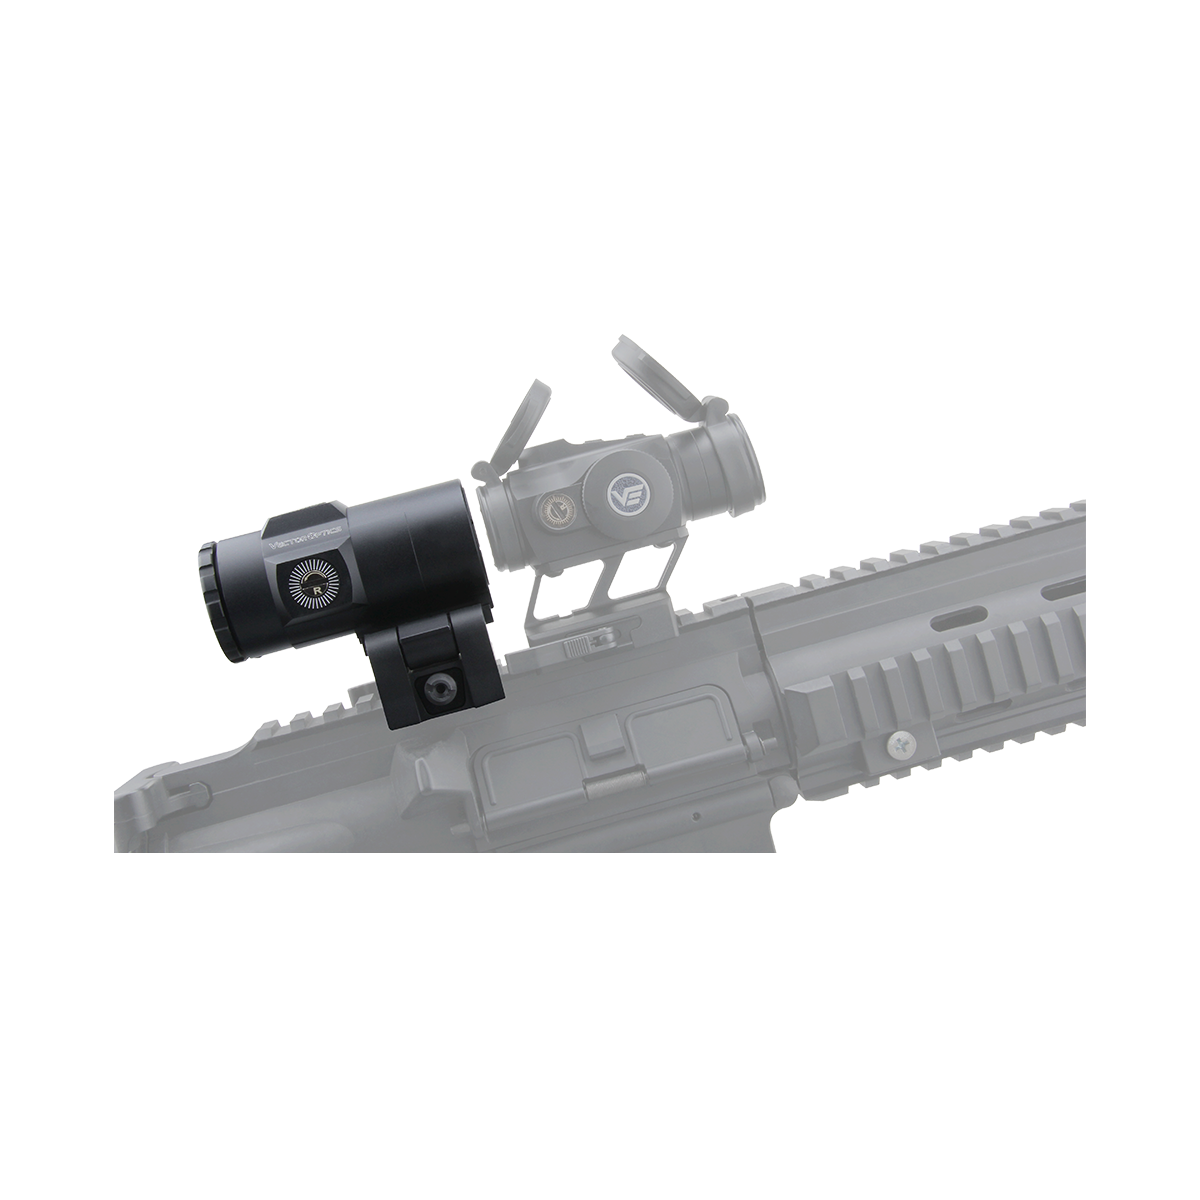 Maverick-IV 3x22 Magnifier Mini